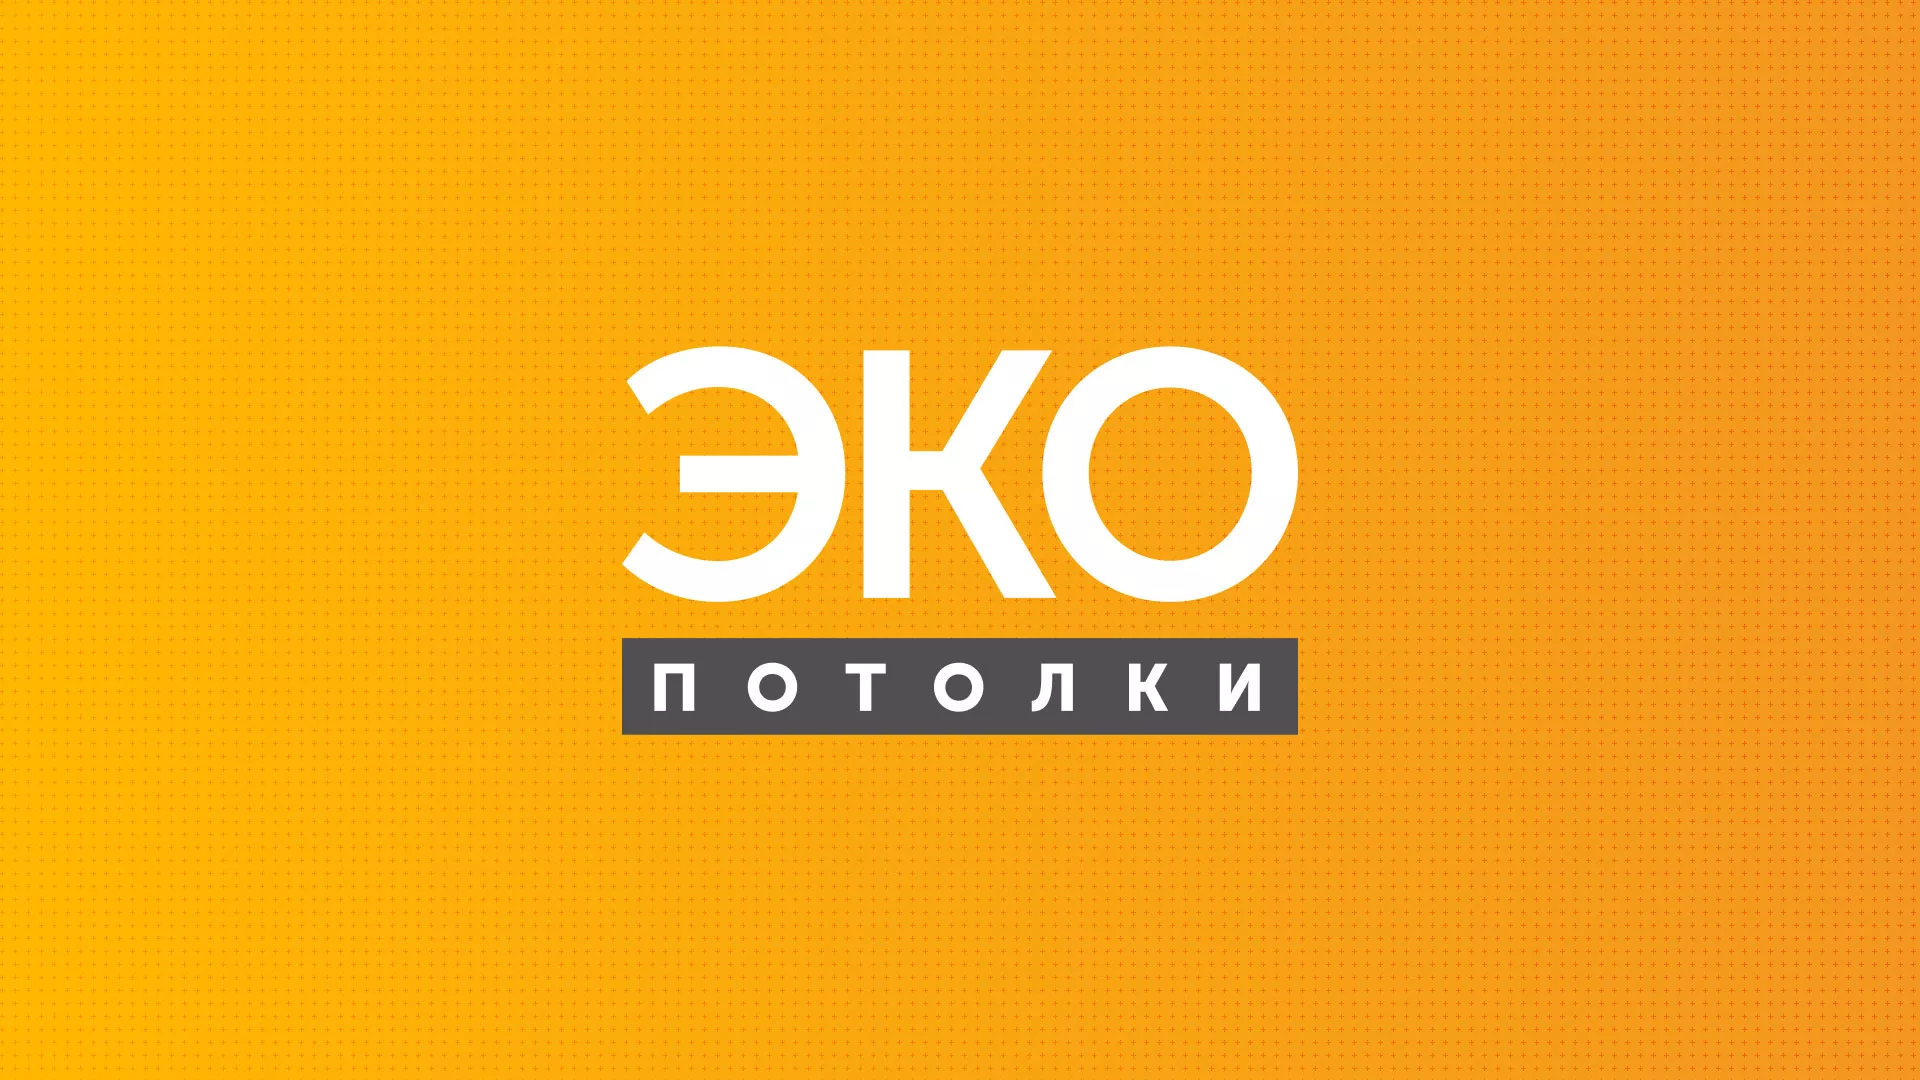 Разработка сайта по натяжным потолкам «Эко Потолки» в Боровске